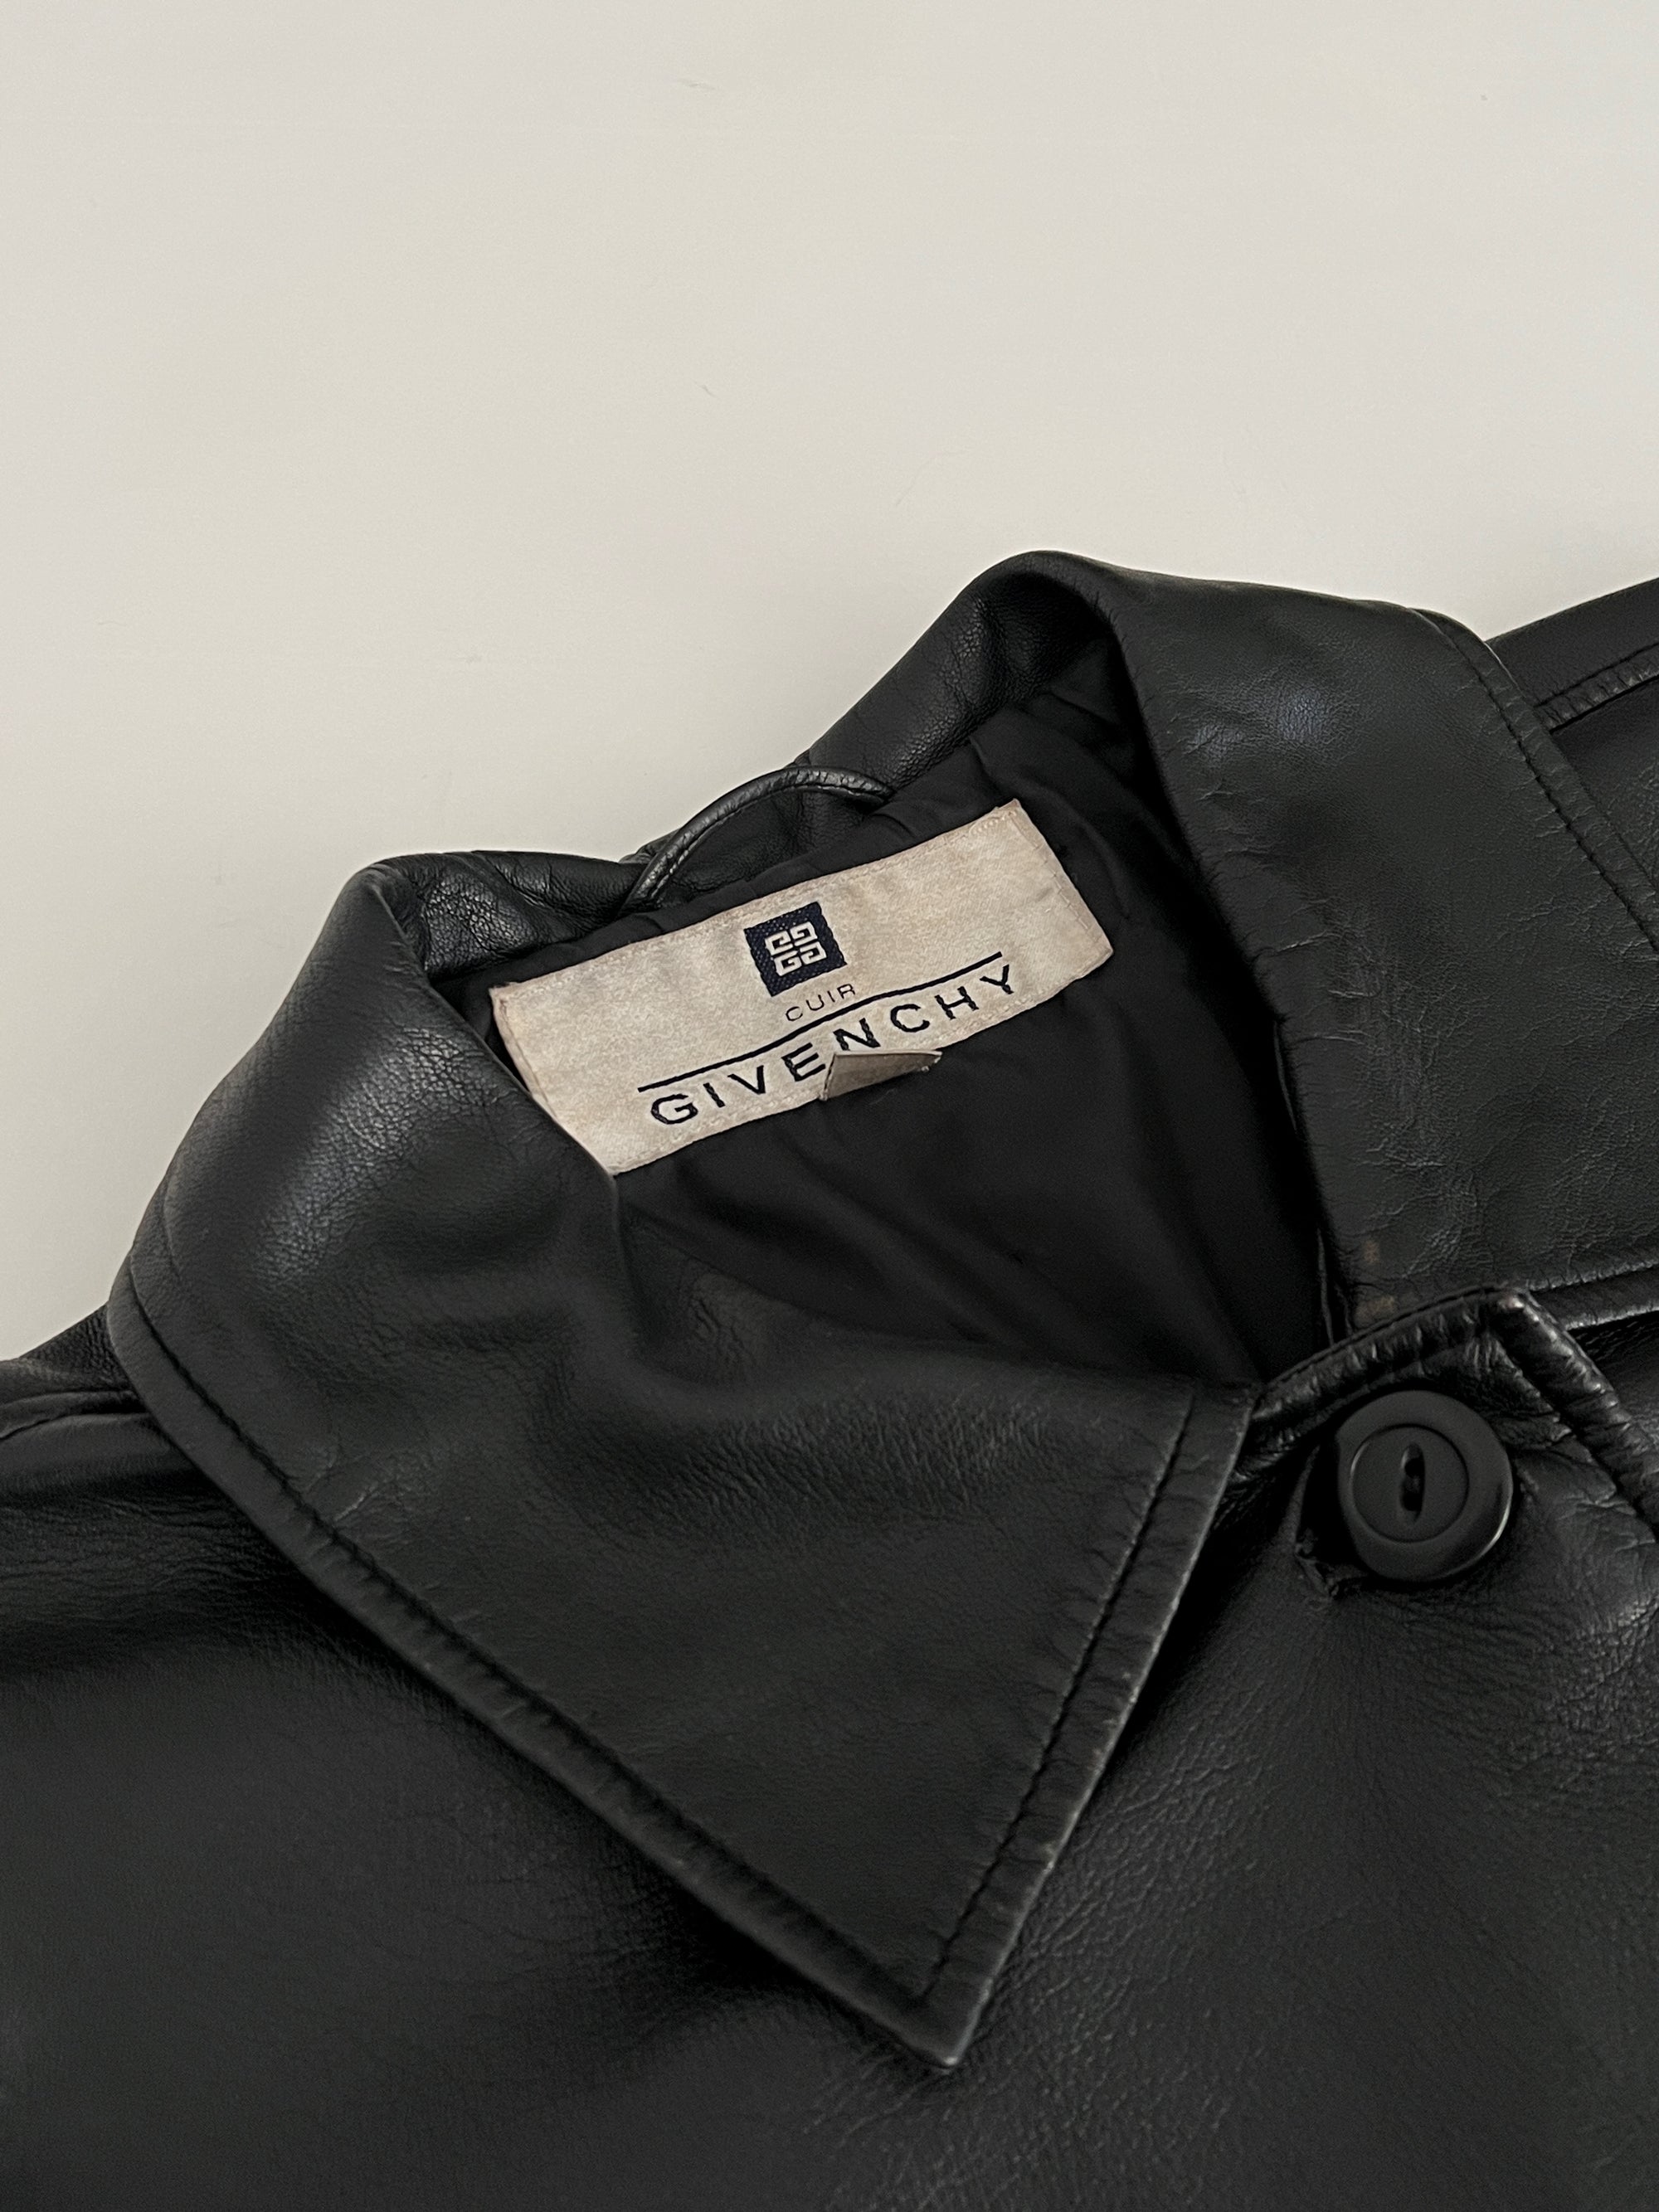 Vintage Givenchy Black Leather Coat